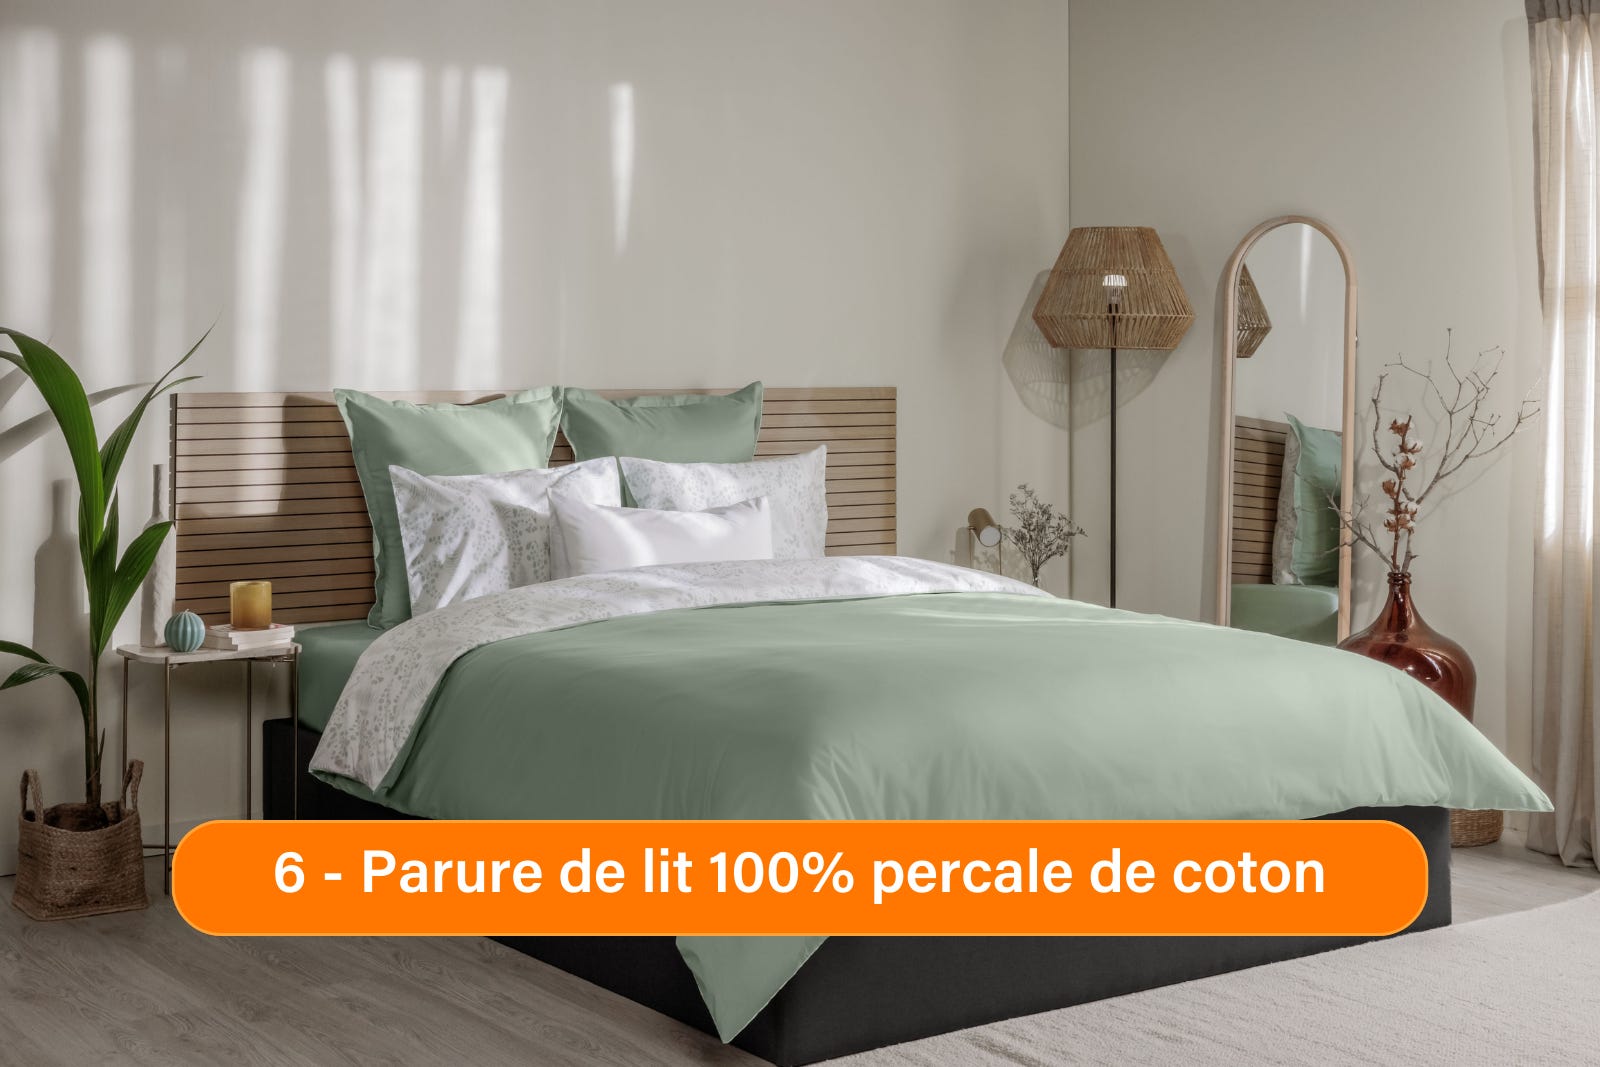 Bed_Linen_Percale_de_Coton_Bundle_Presentation.png